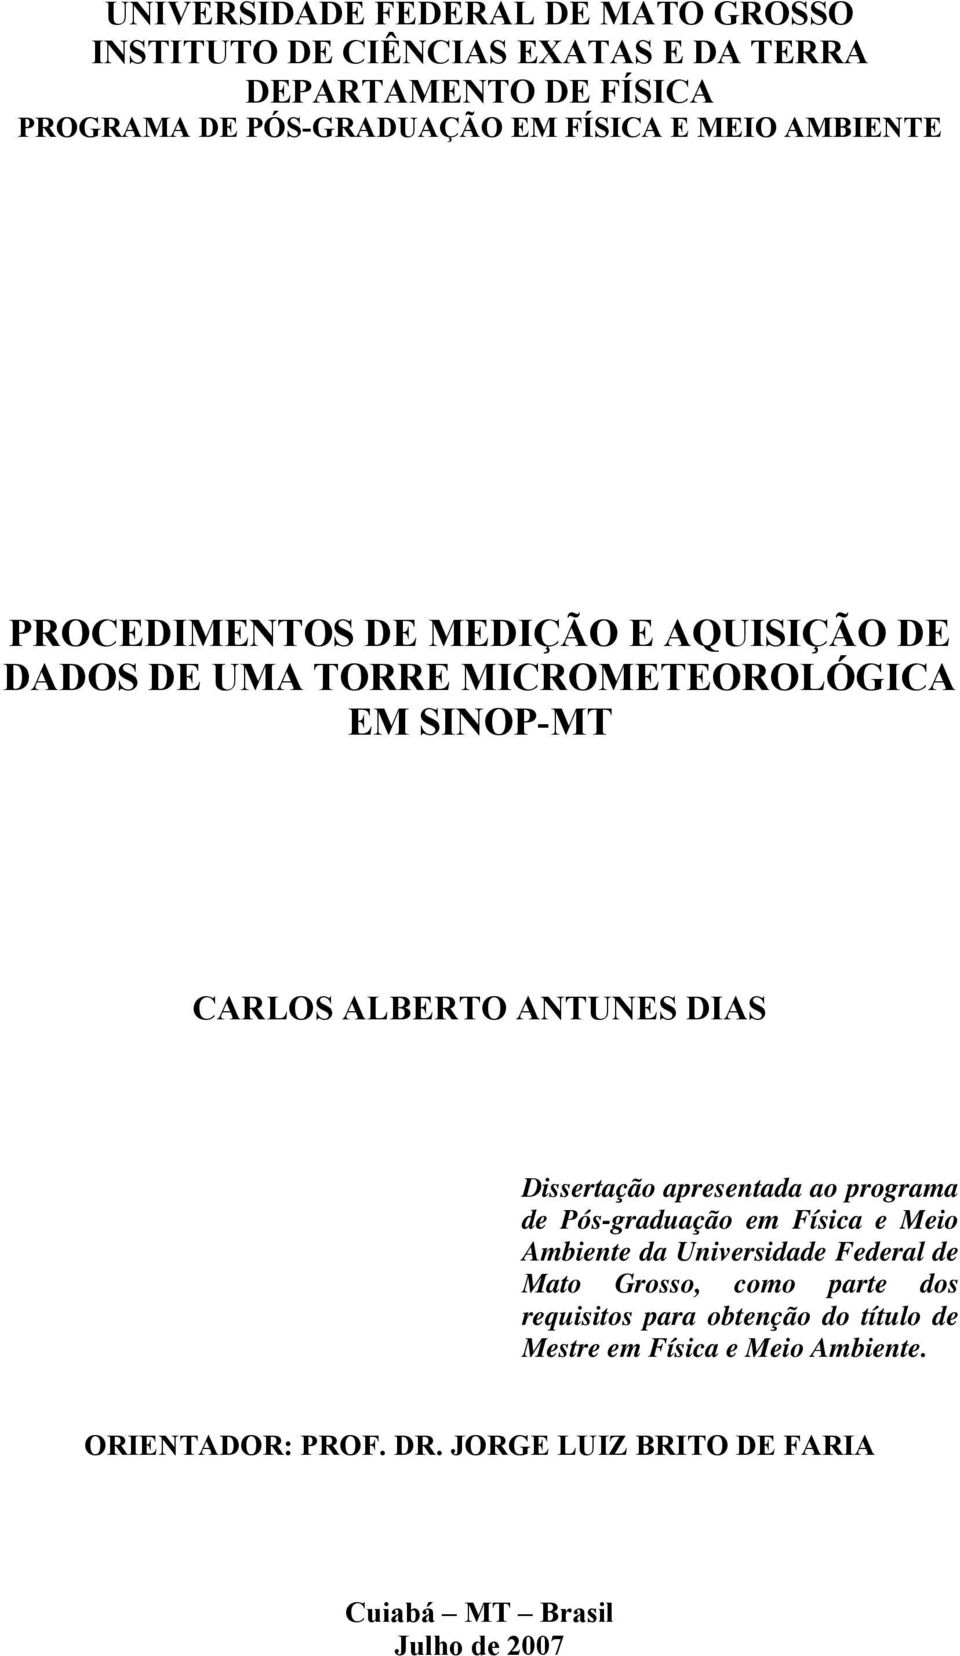 Dissertação apresentada ao programa de Pós-graduação em Física e Meio Ambiente da Universidade Federal de Mato Grosso, como parte dos